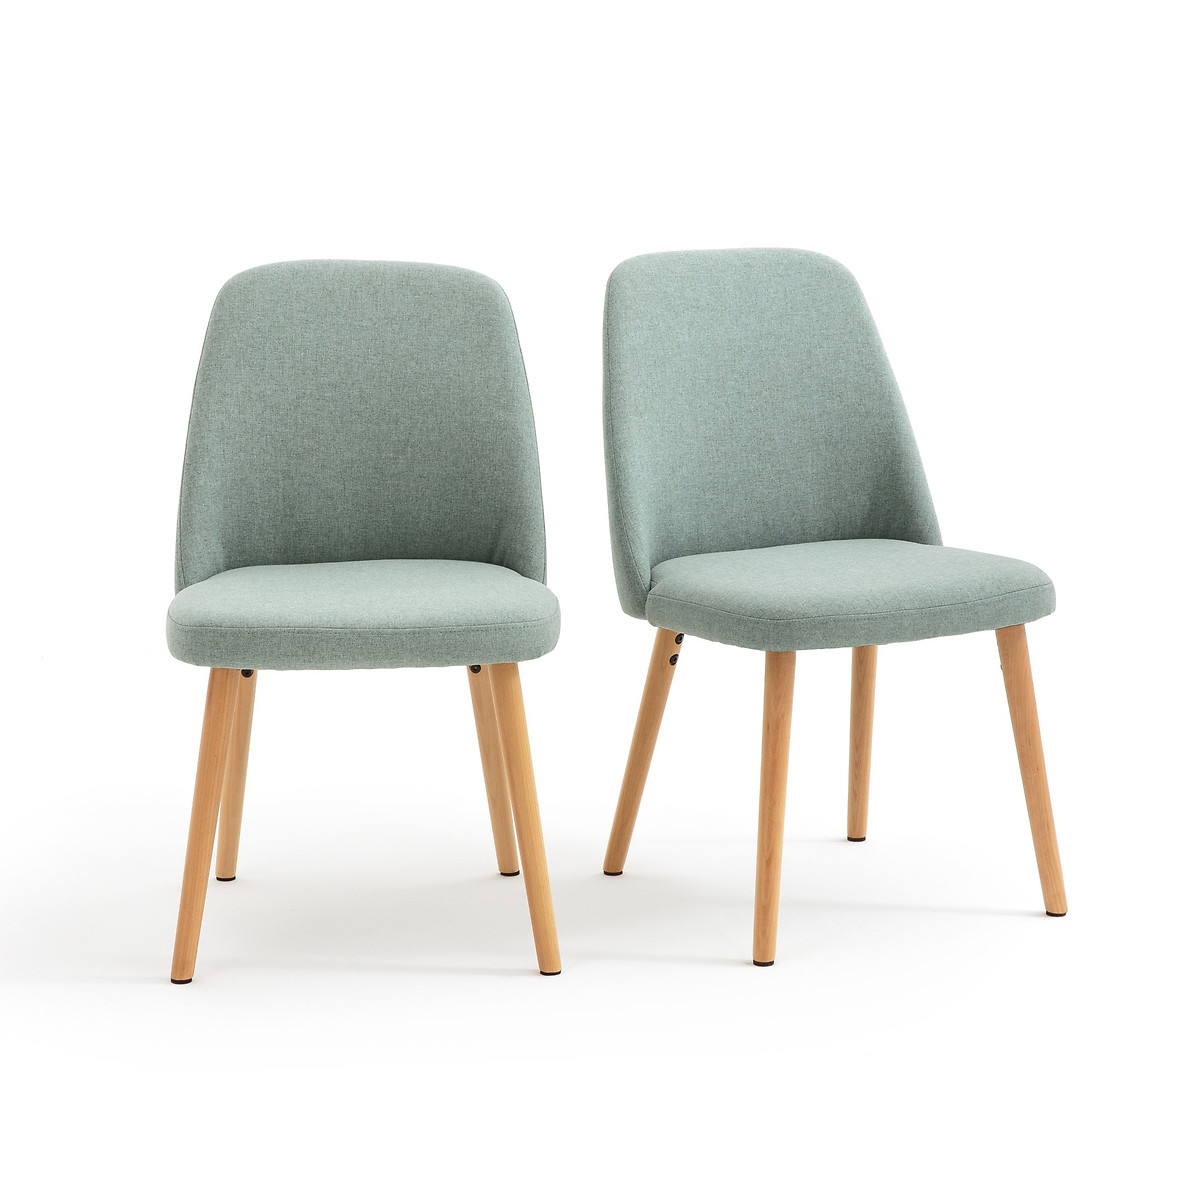 Комплект из 2 стульев, Jimi La Redoute единый размер зеленый комплект из 2 стульев из массива гельвеи jimi единый размер бежевый